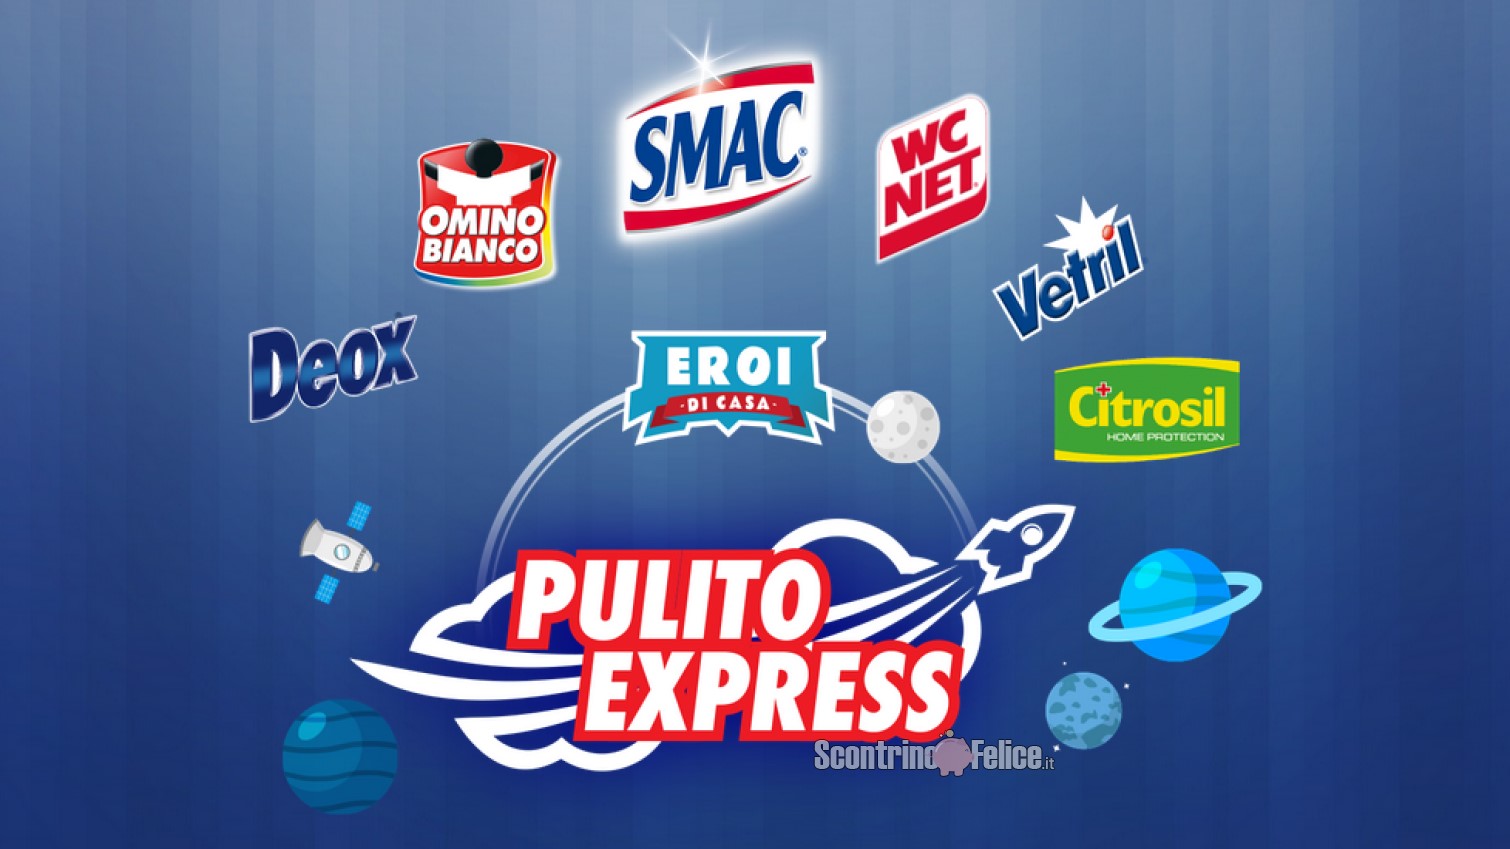 Eroi Di Casa "Pulito Express": in palio Gift Card Idea Shopping da 50 euro e monopattini elettrici